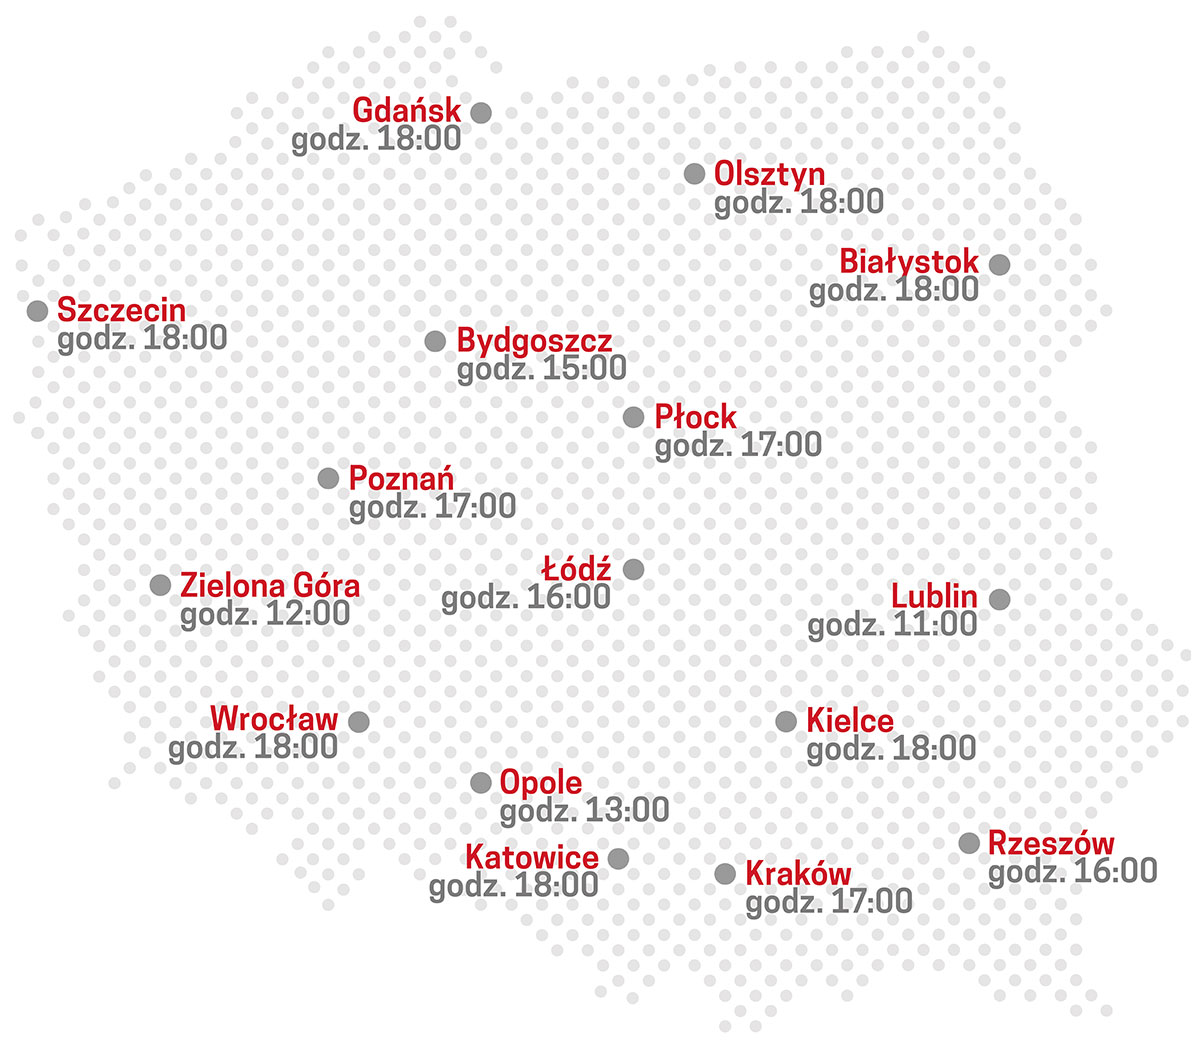 mapa z nazwami miast w których odbędą się transmisje